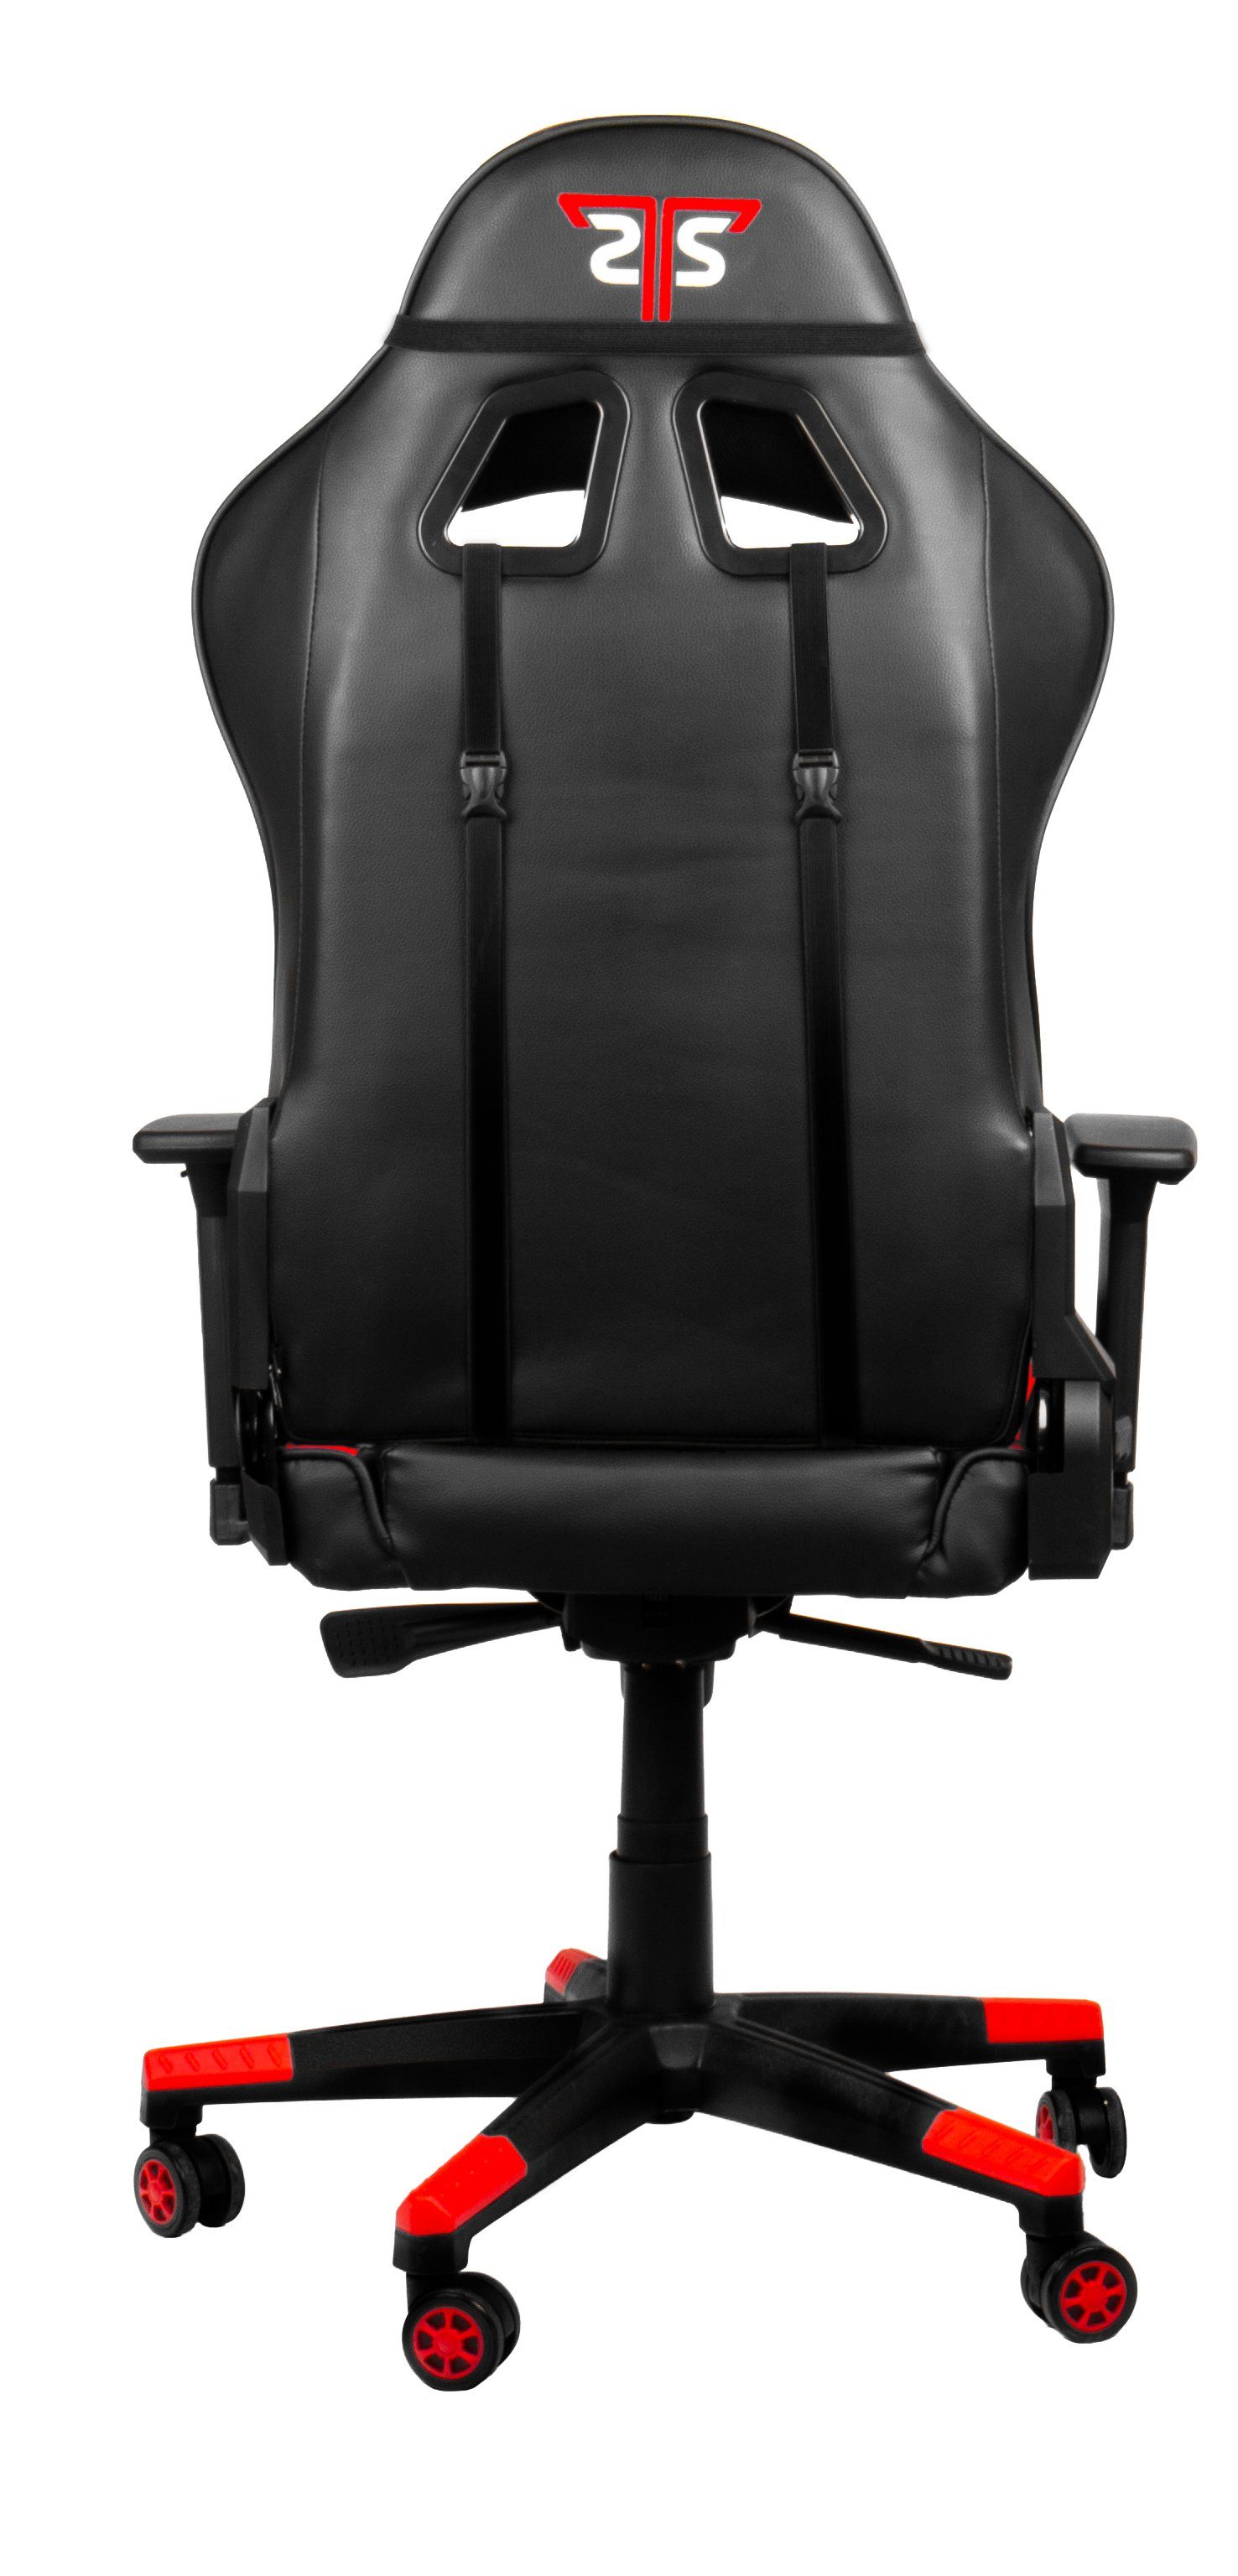 Hyrican Gaming-Stuhl "Striker Gamingstuhl,Schreibtischstuhl Code XL" Red ergonomischer